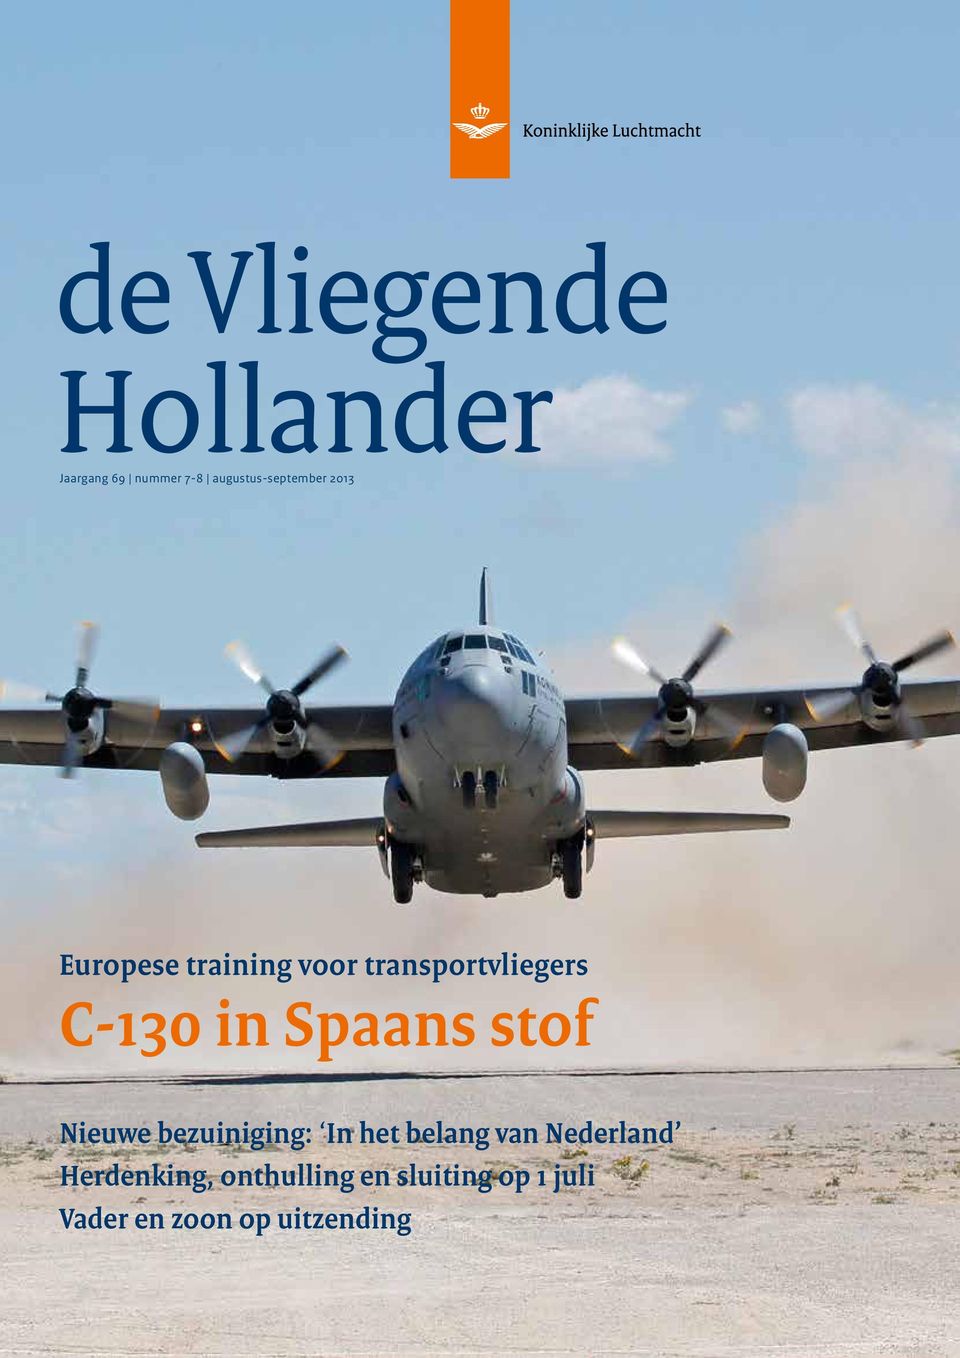 transportvliegers C-130 in Spaans stof Nieuwe bezuiniging: In